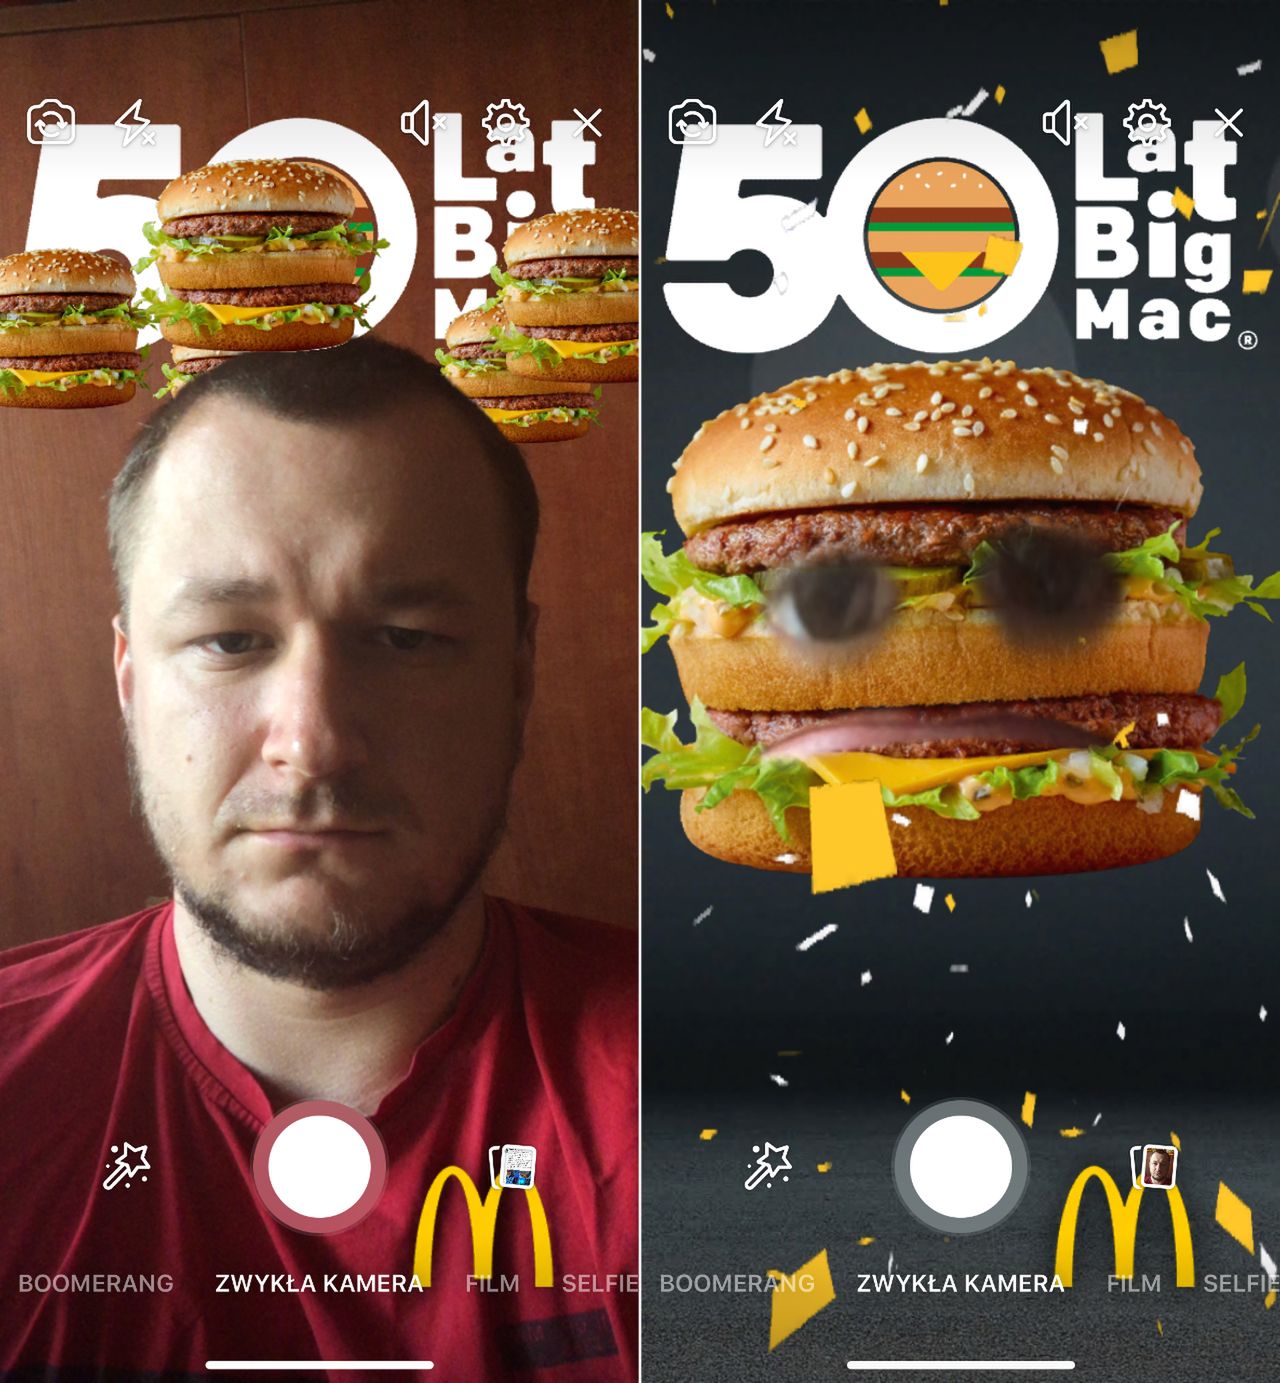 McDonald's ze swoją reklamą AR się nie popisał